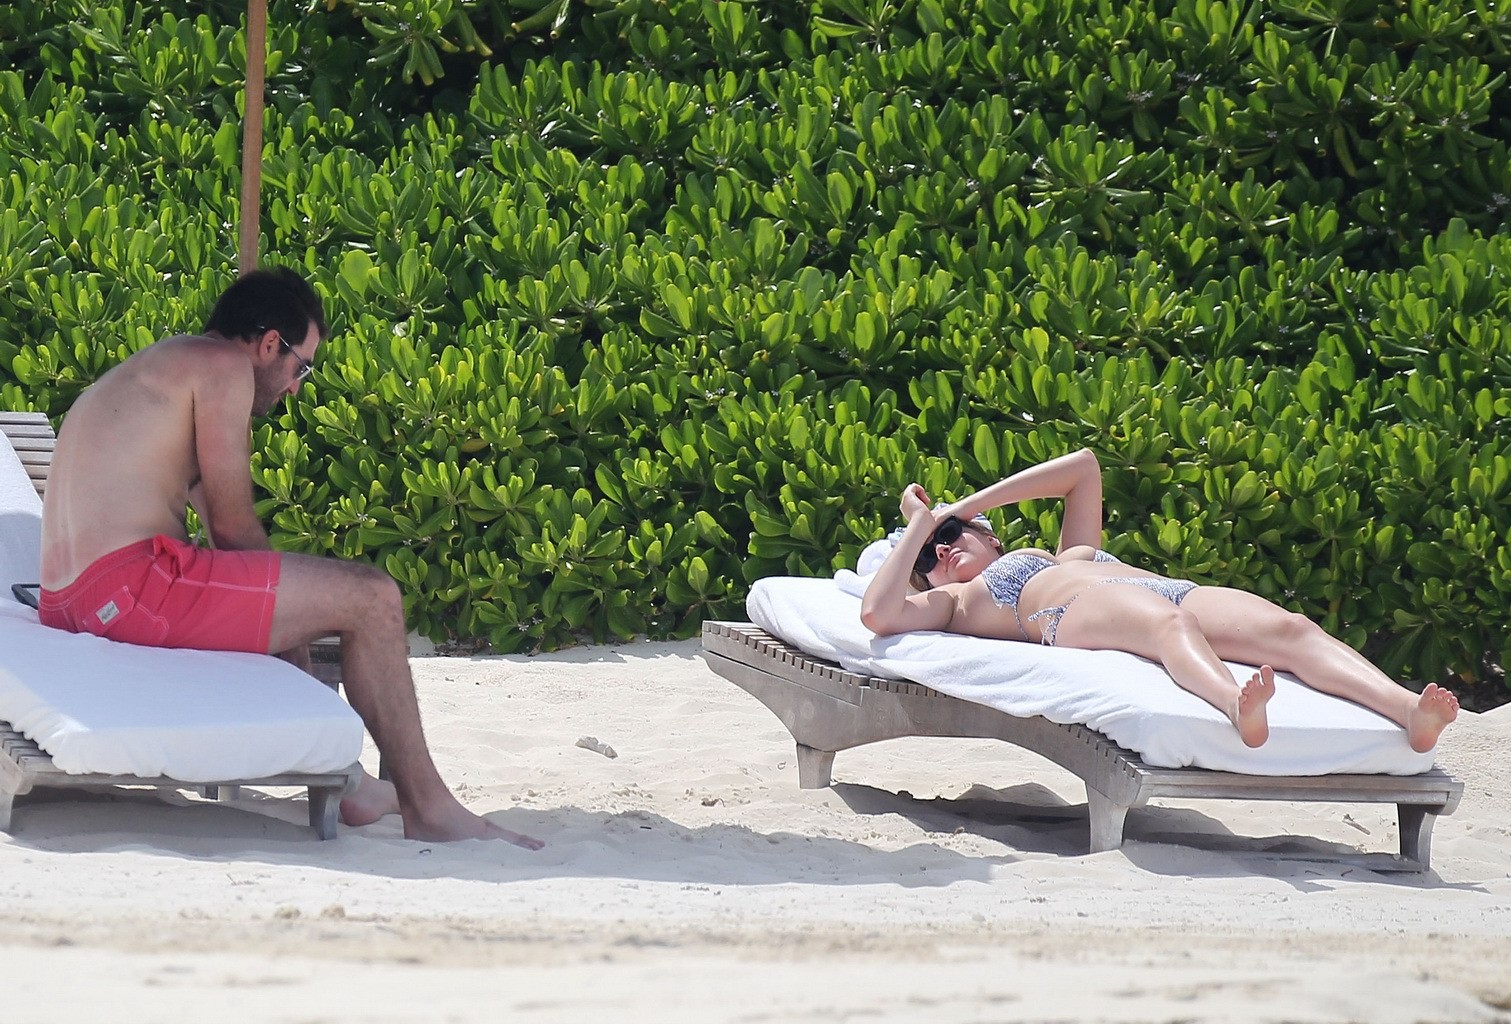 Kate upton bronceando sus melones lechosos y su culo en bikini plateado en la playa en mex
 #75190867